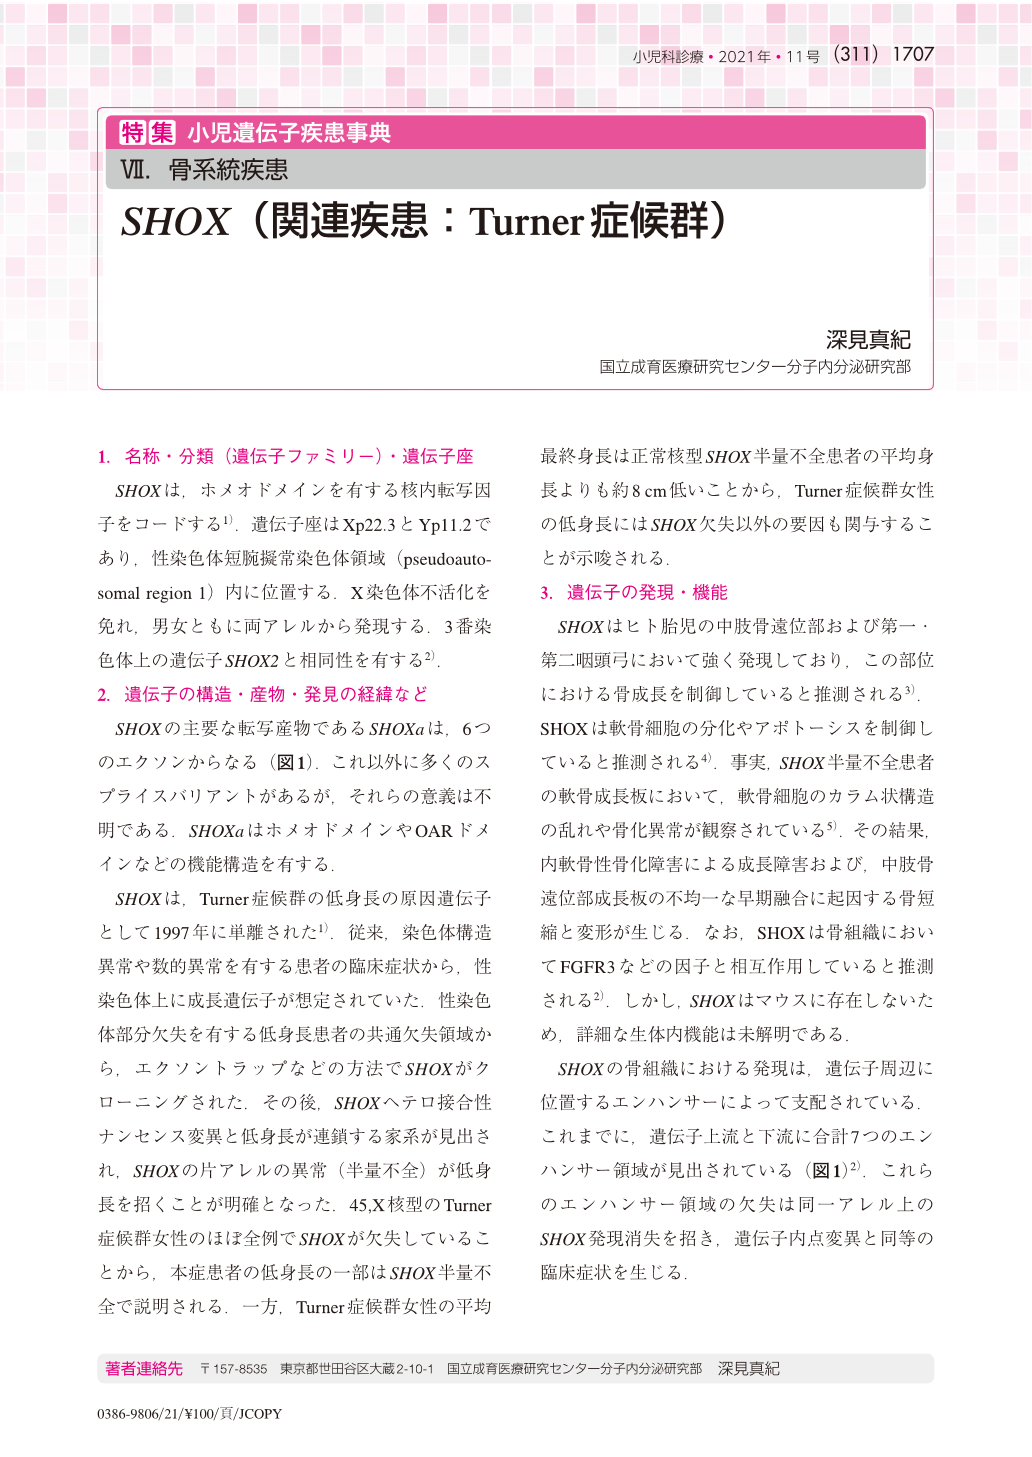 骨系統疾患 SHOX(関連疾患:Turner症候群) (小児科診療 84巻11号) | 医書.jp